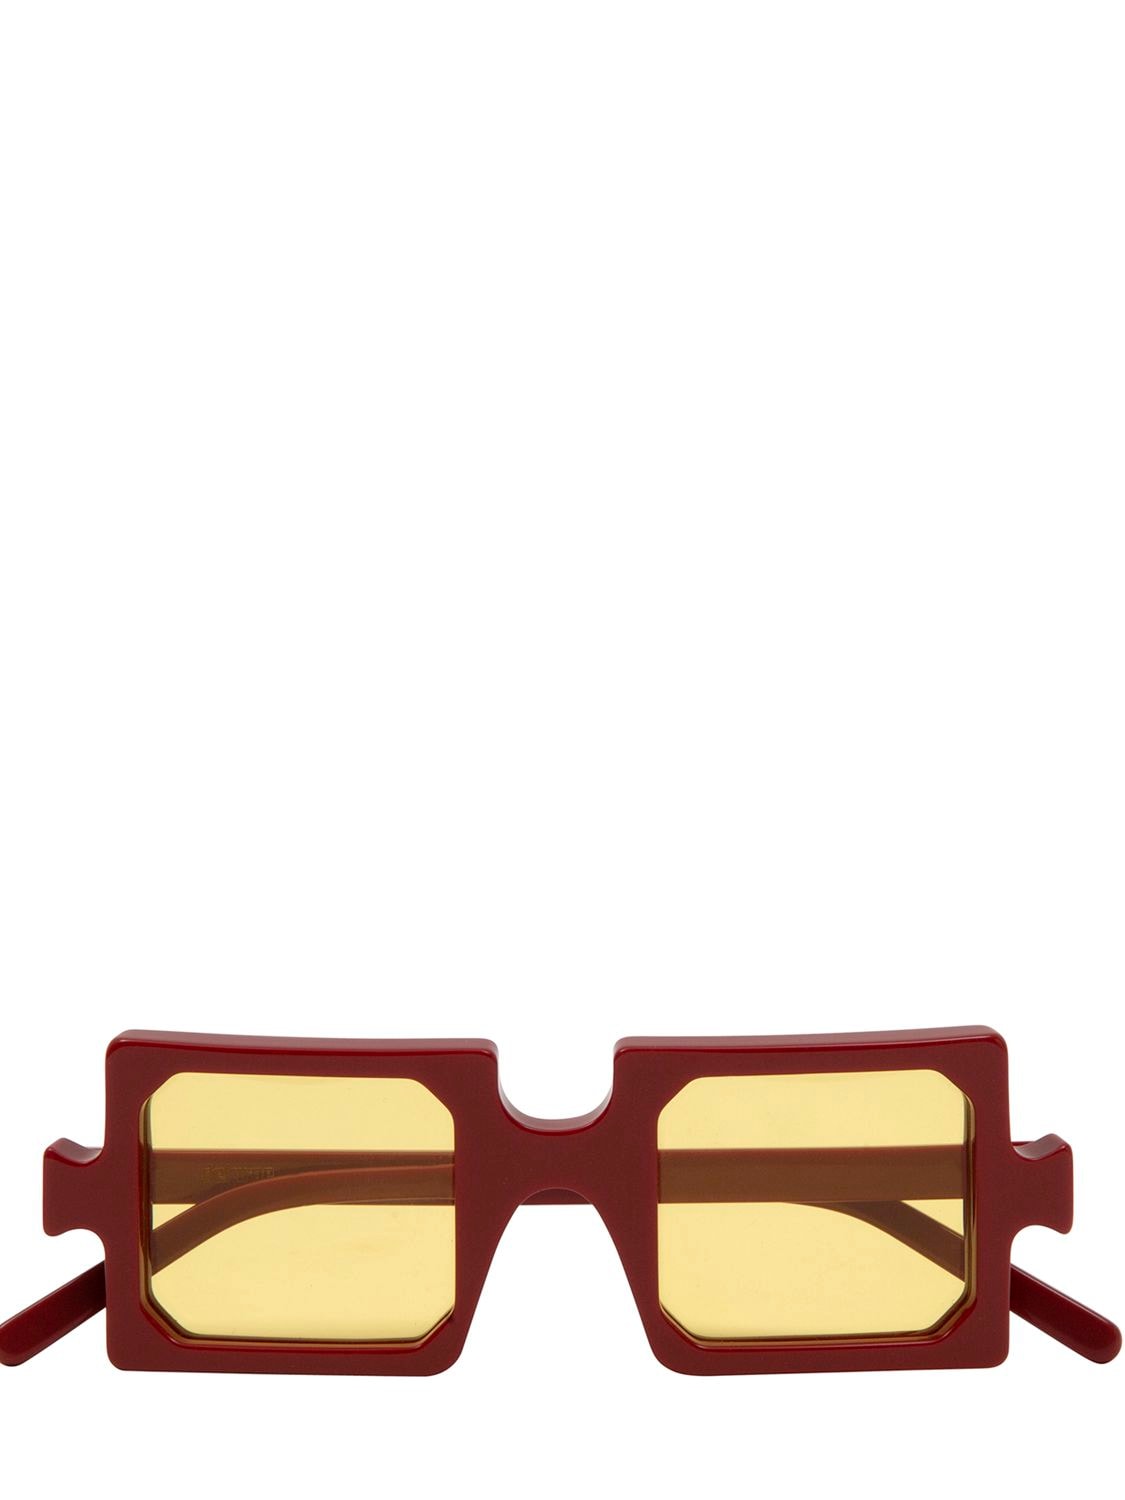 Image of Misquare Squared Acetate Sunglasses